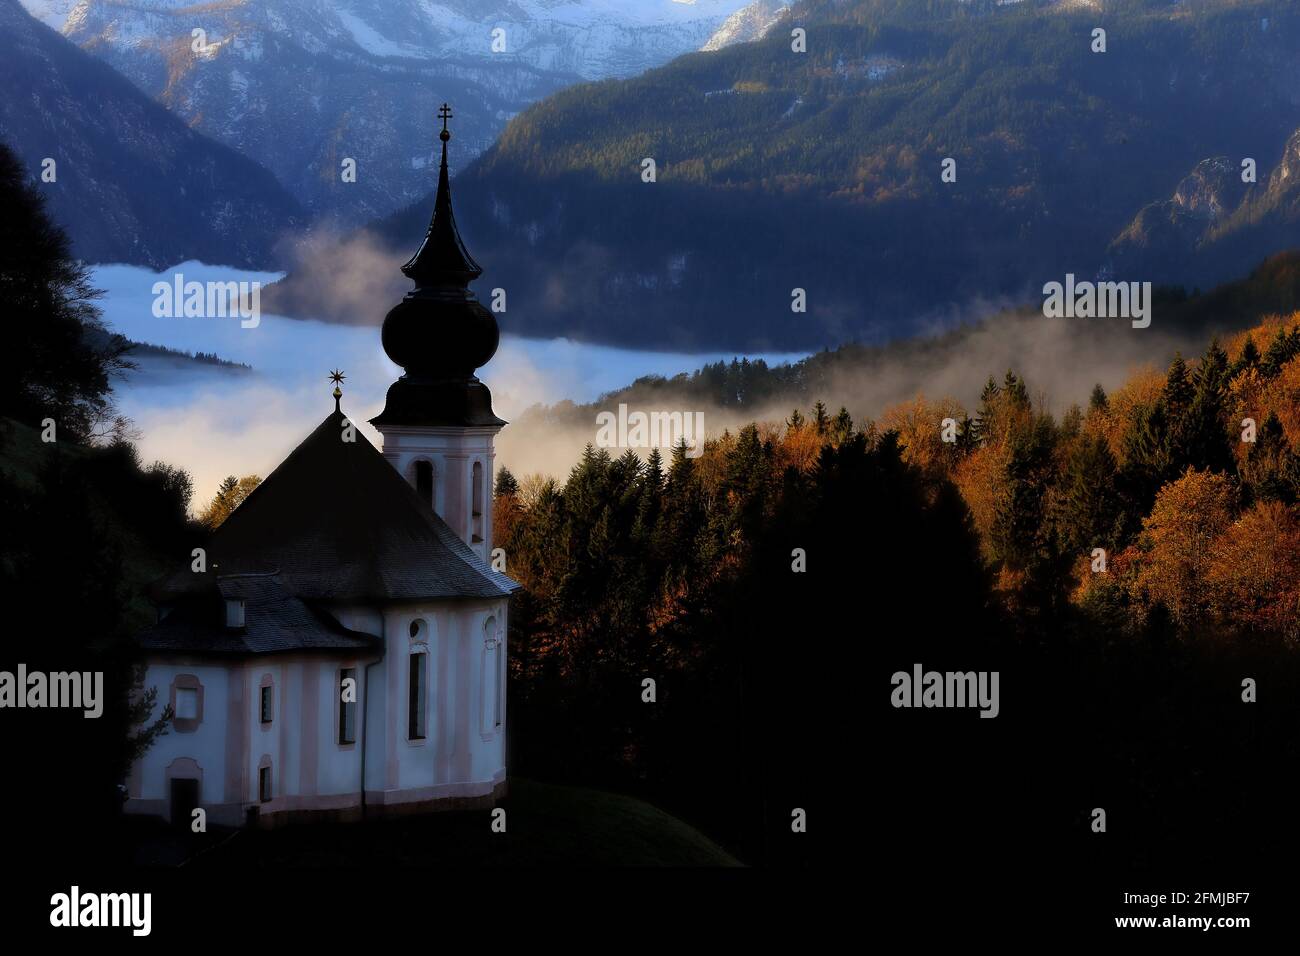 Der Watzmann in den Alpen ist das dominante Bergv massider Berchtesgadener Alpen und einer der berühmtesten Berge Deutschlands Foto de stock